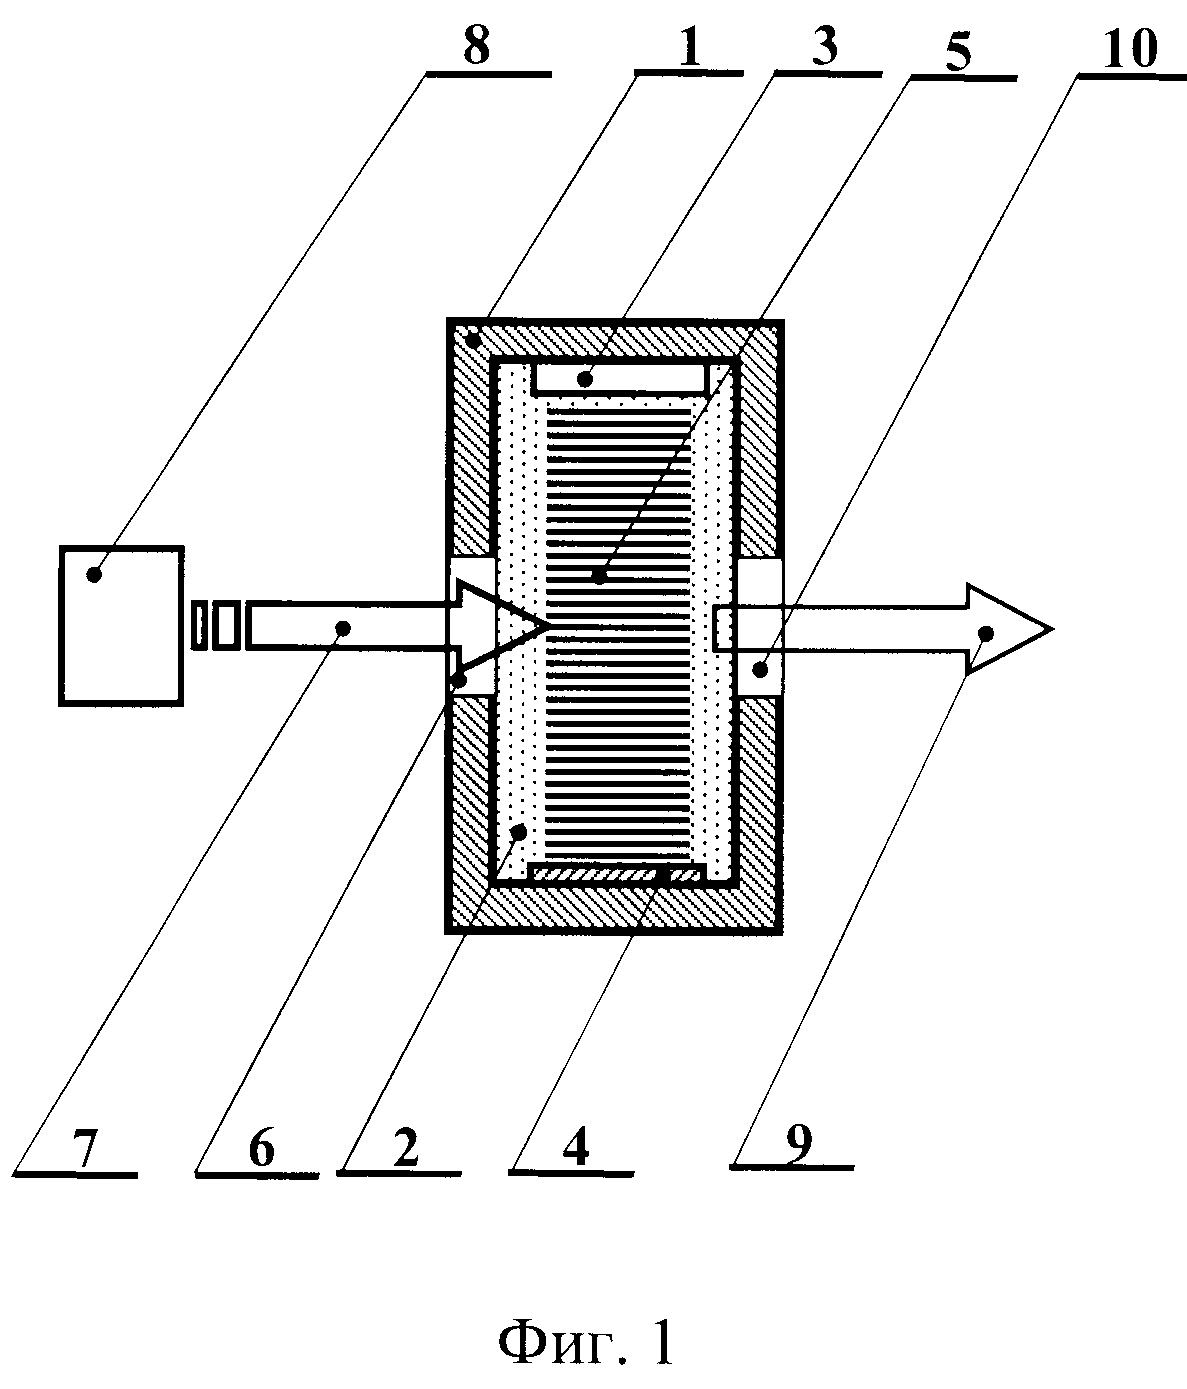 Управляемый ультразвуком поляризатор терагерцового излучения